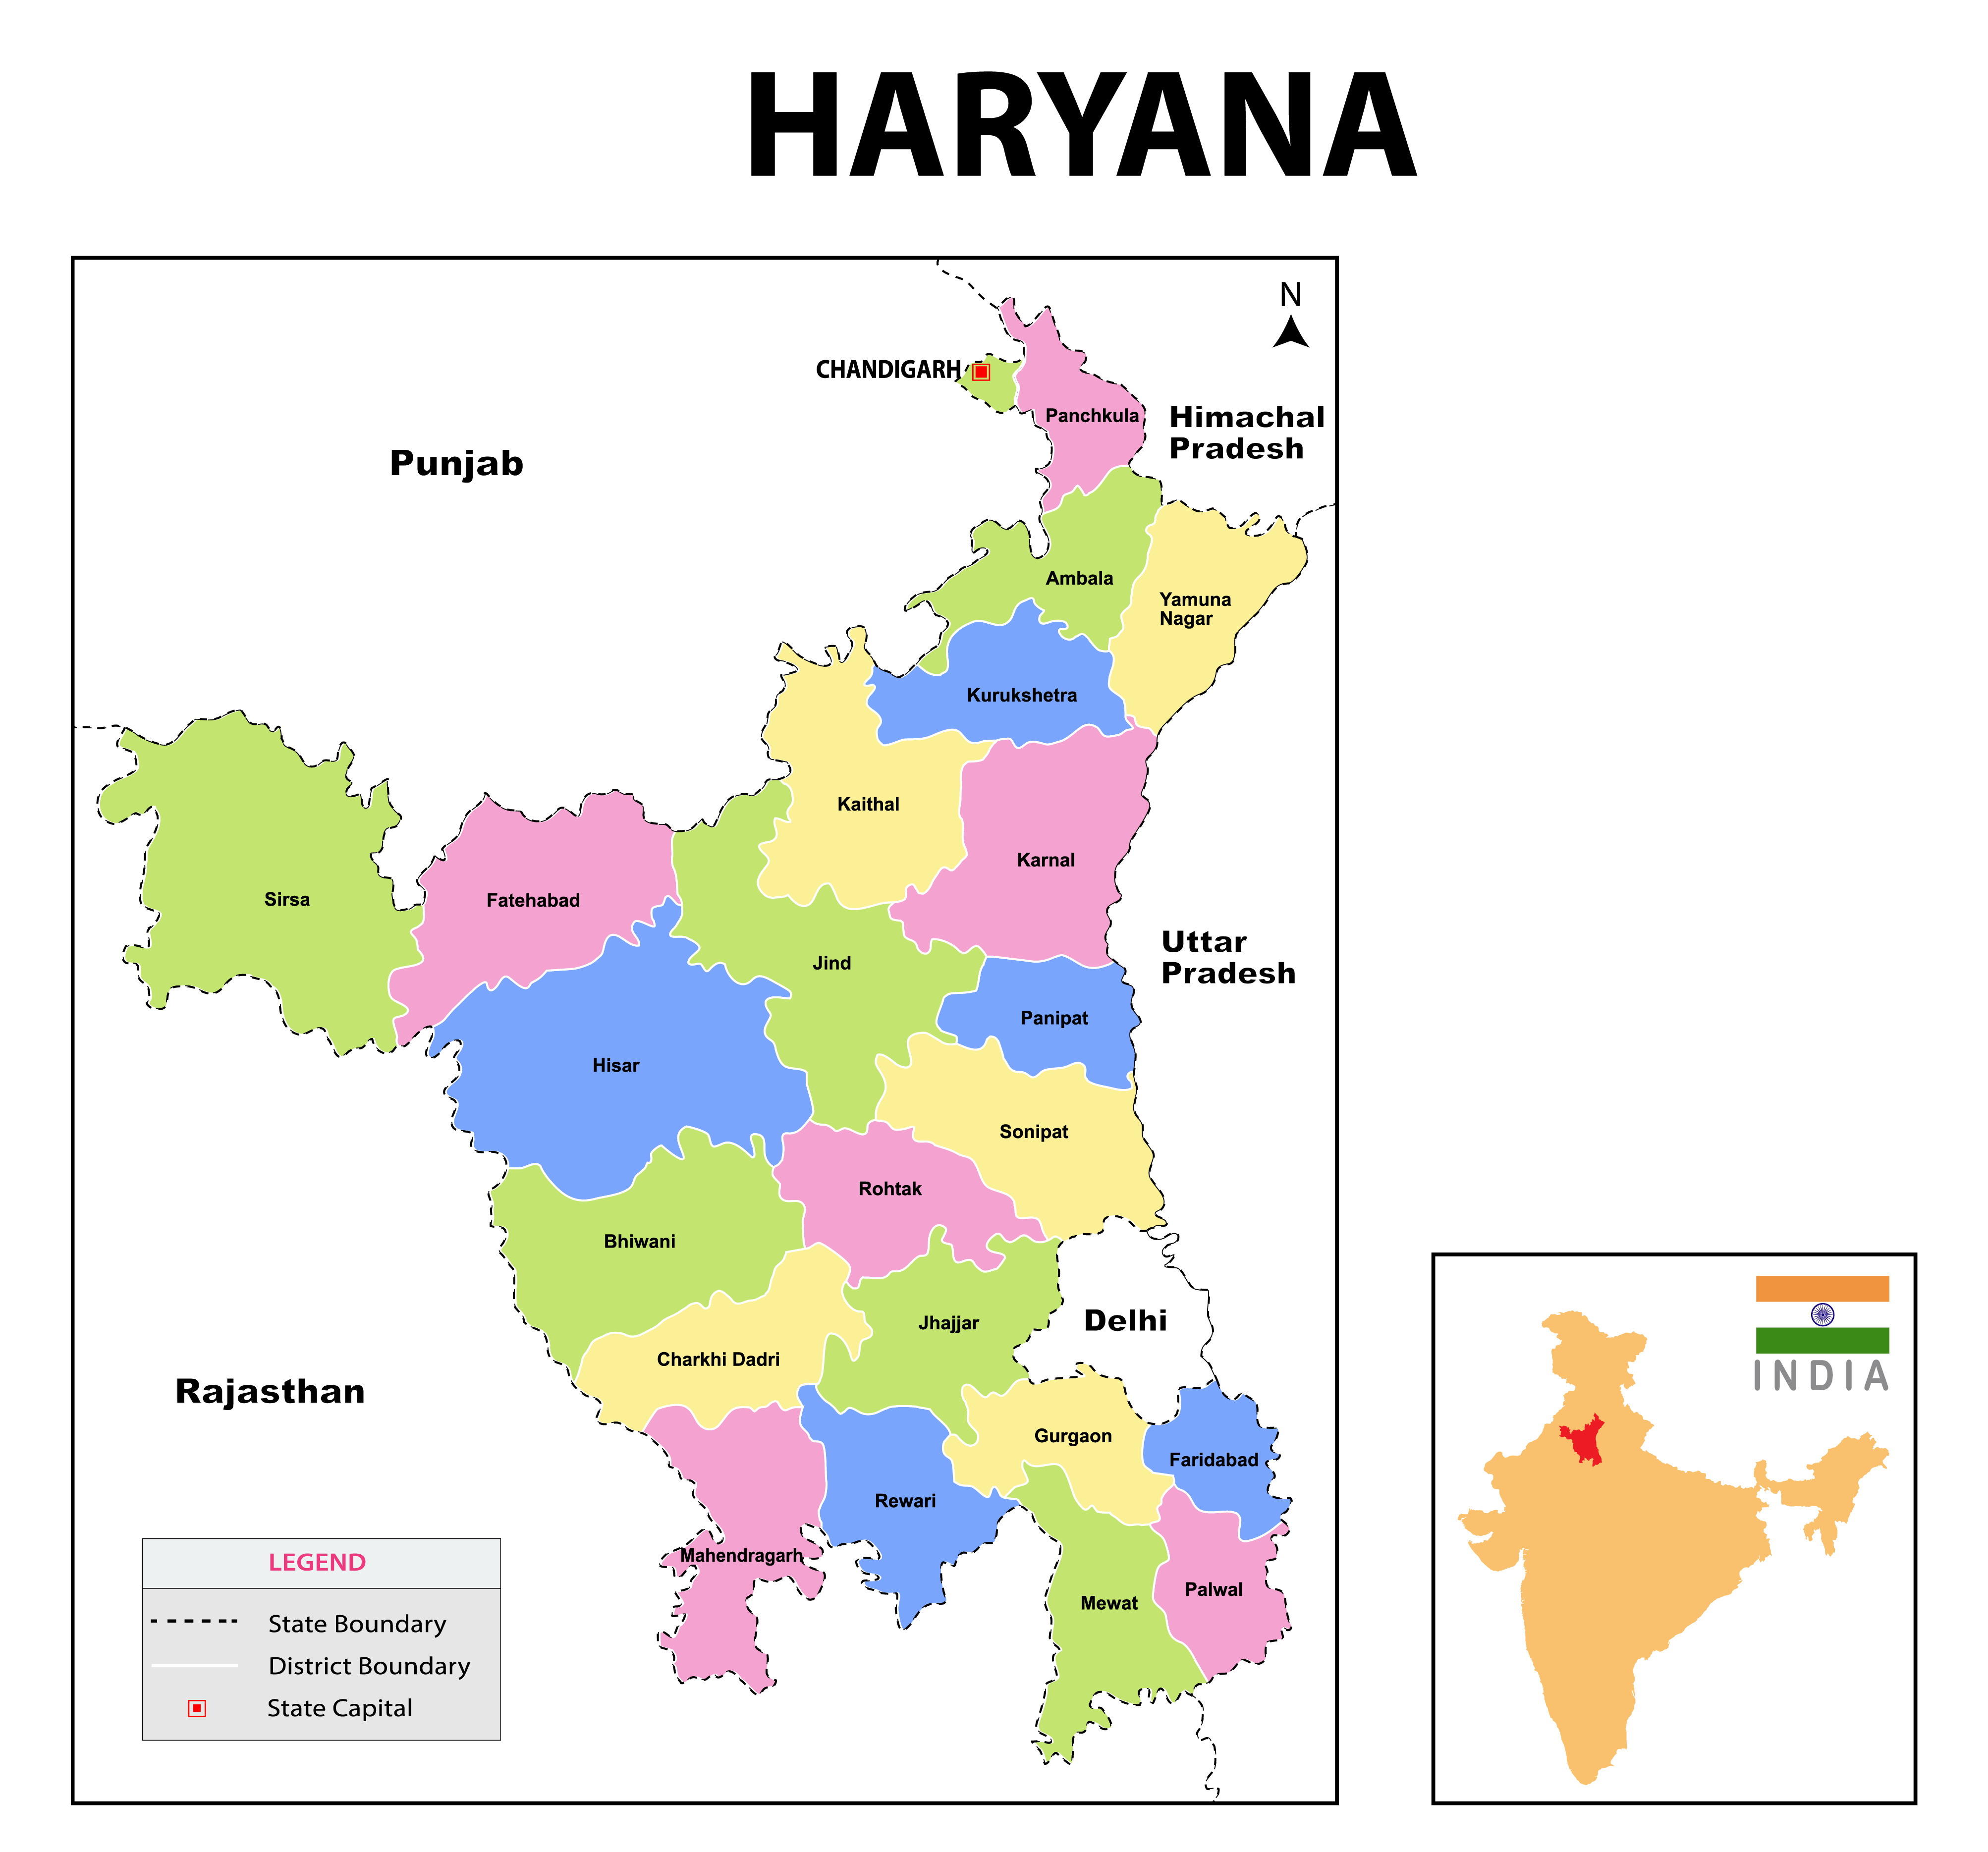 Haryana Faces Cleanliness Setback in Swachh Survekshan 2023 Rankings